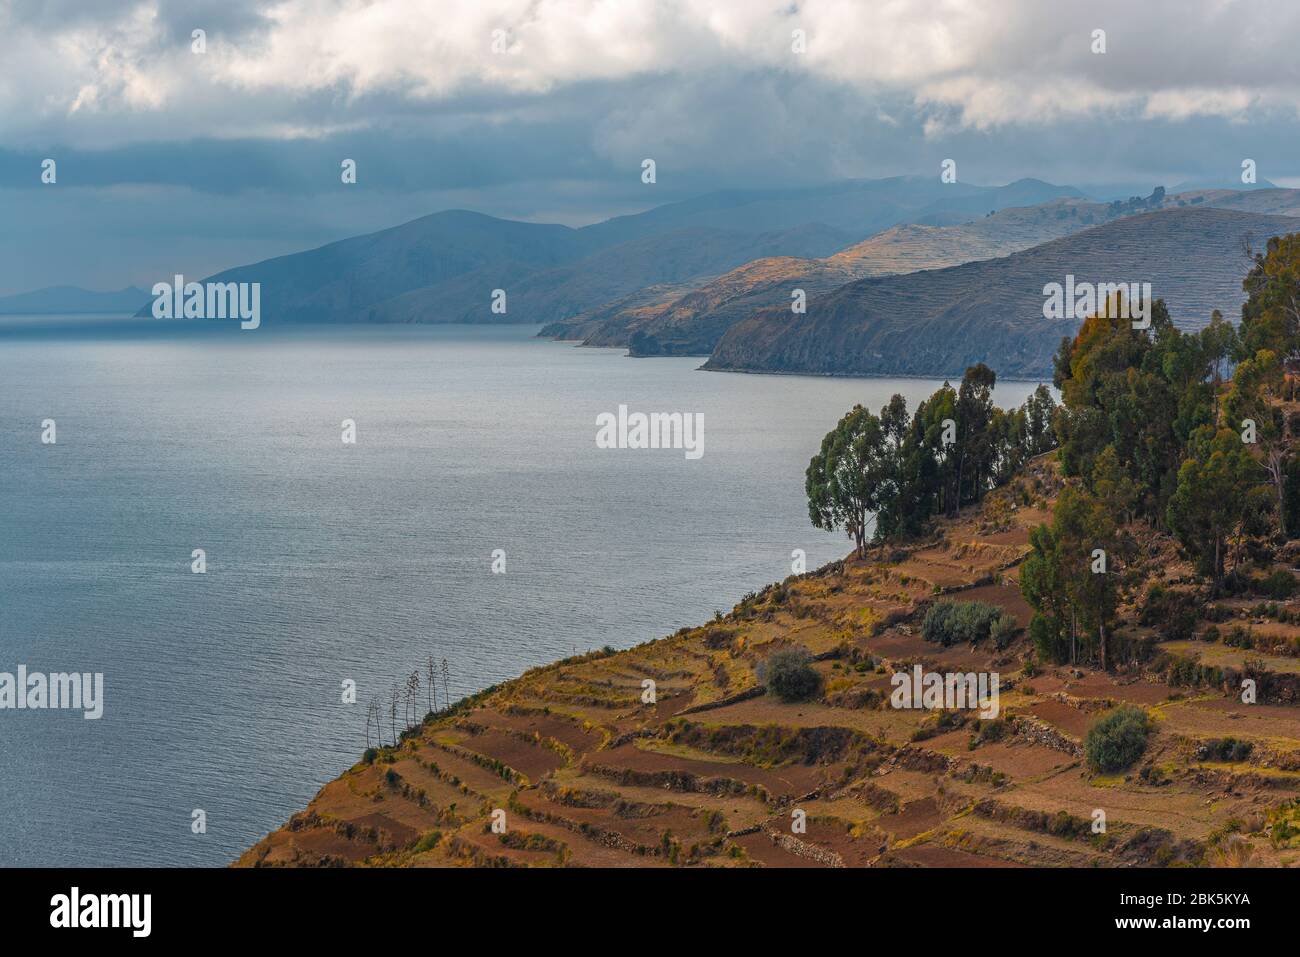 Landscape of the Sun Island (Isla del Sol) by the Titicaca Lake, Bolivia. Stock Photo